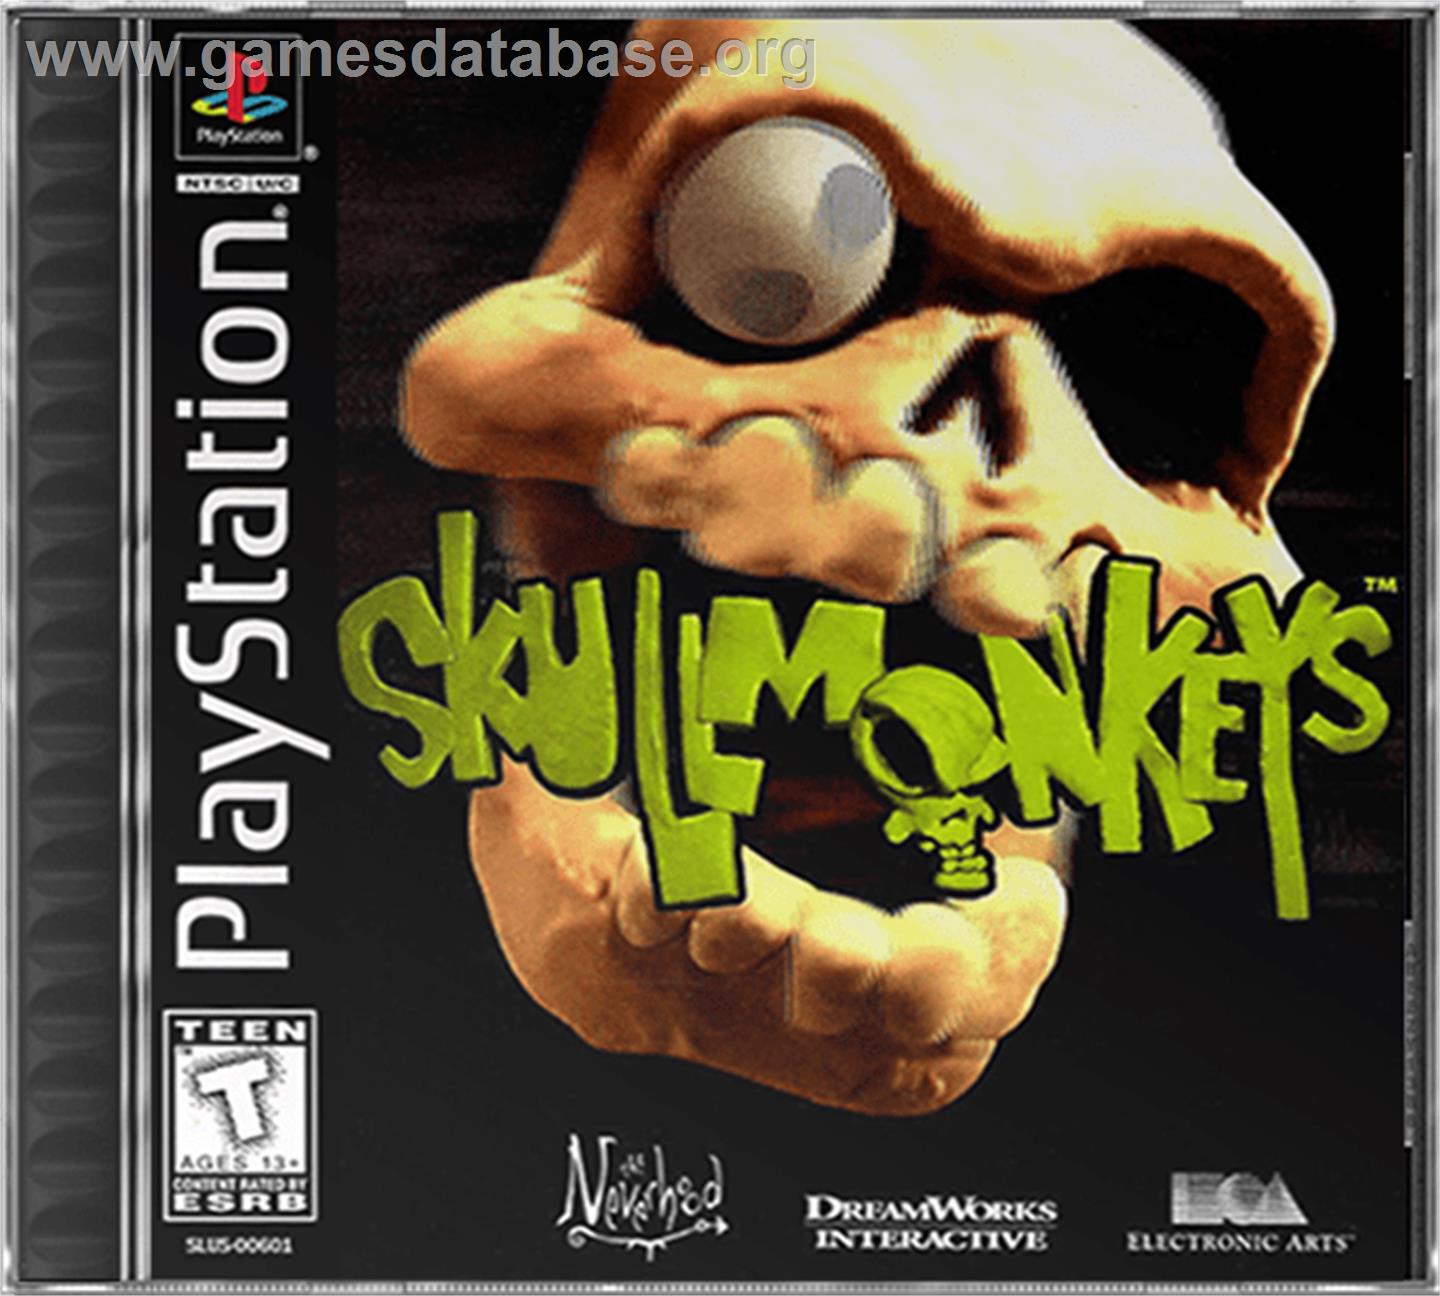 Skullmonkeys - Sony Playstation - Artwork - Box